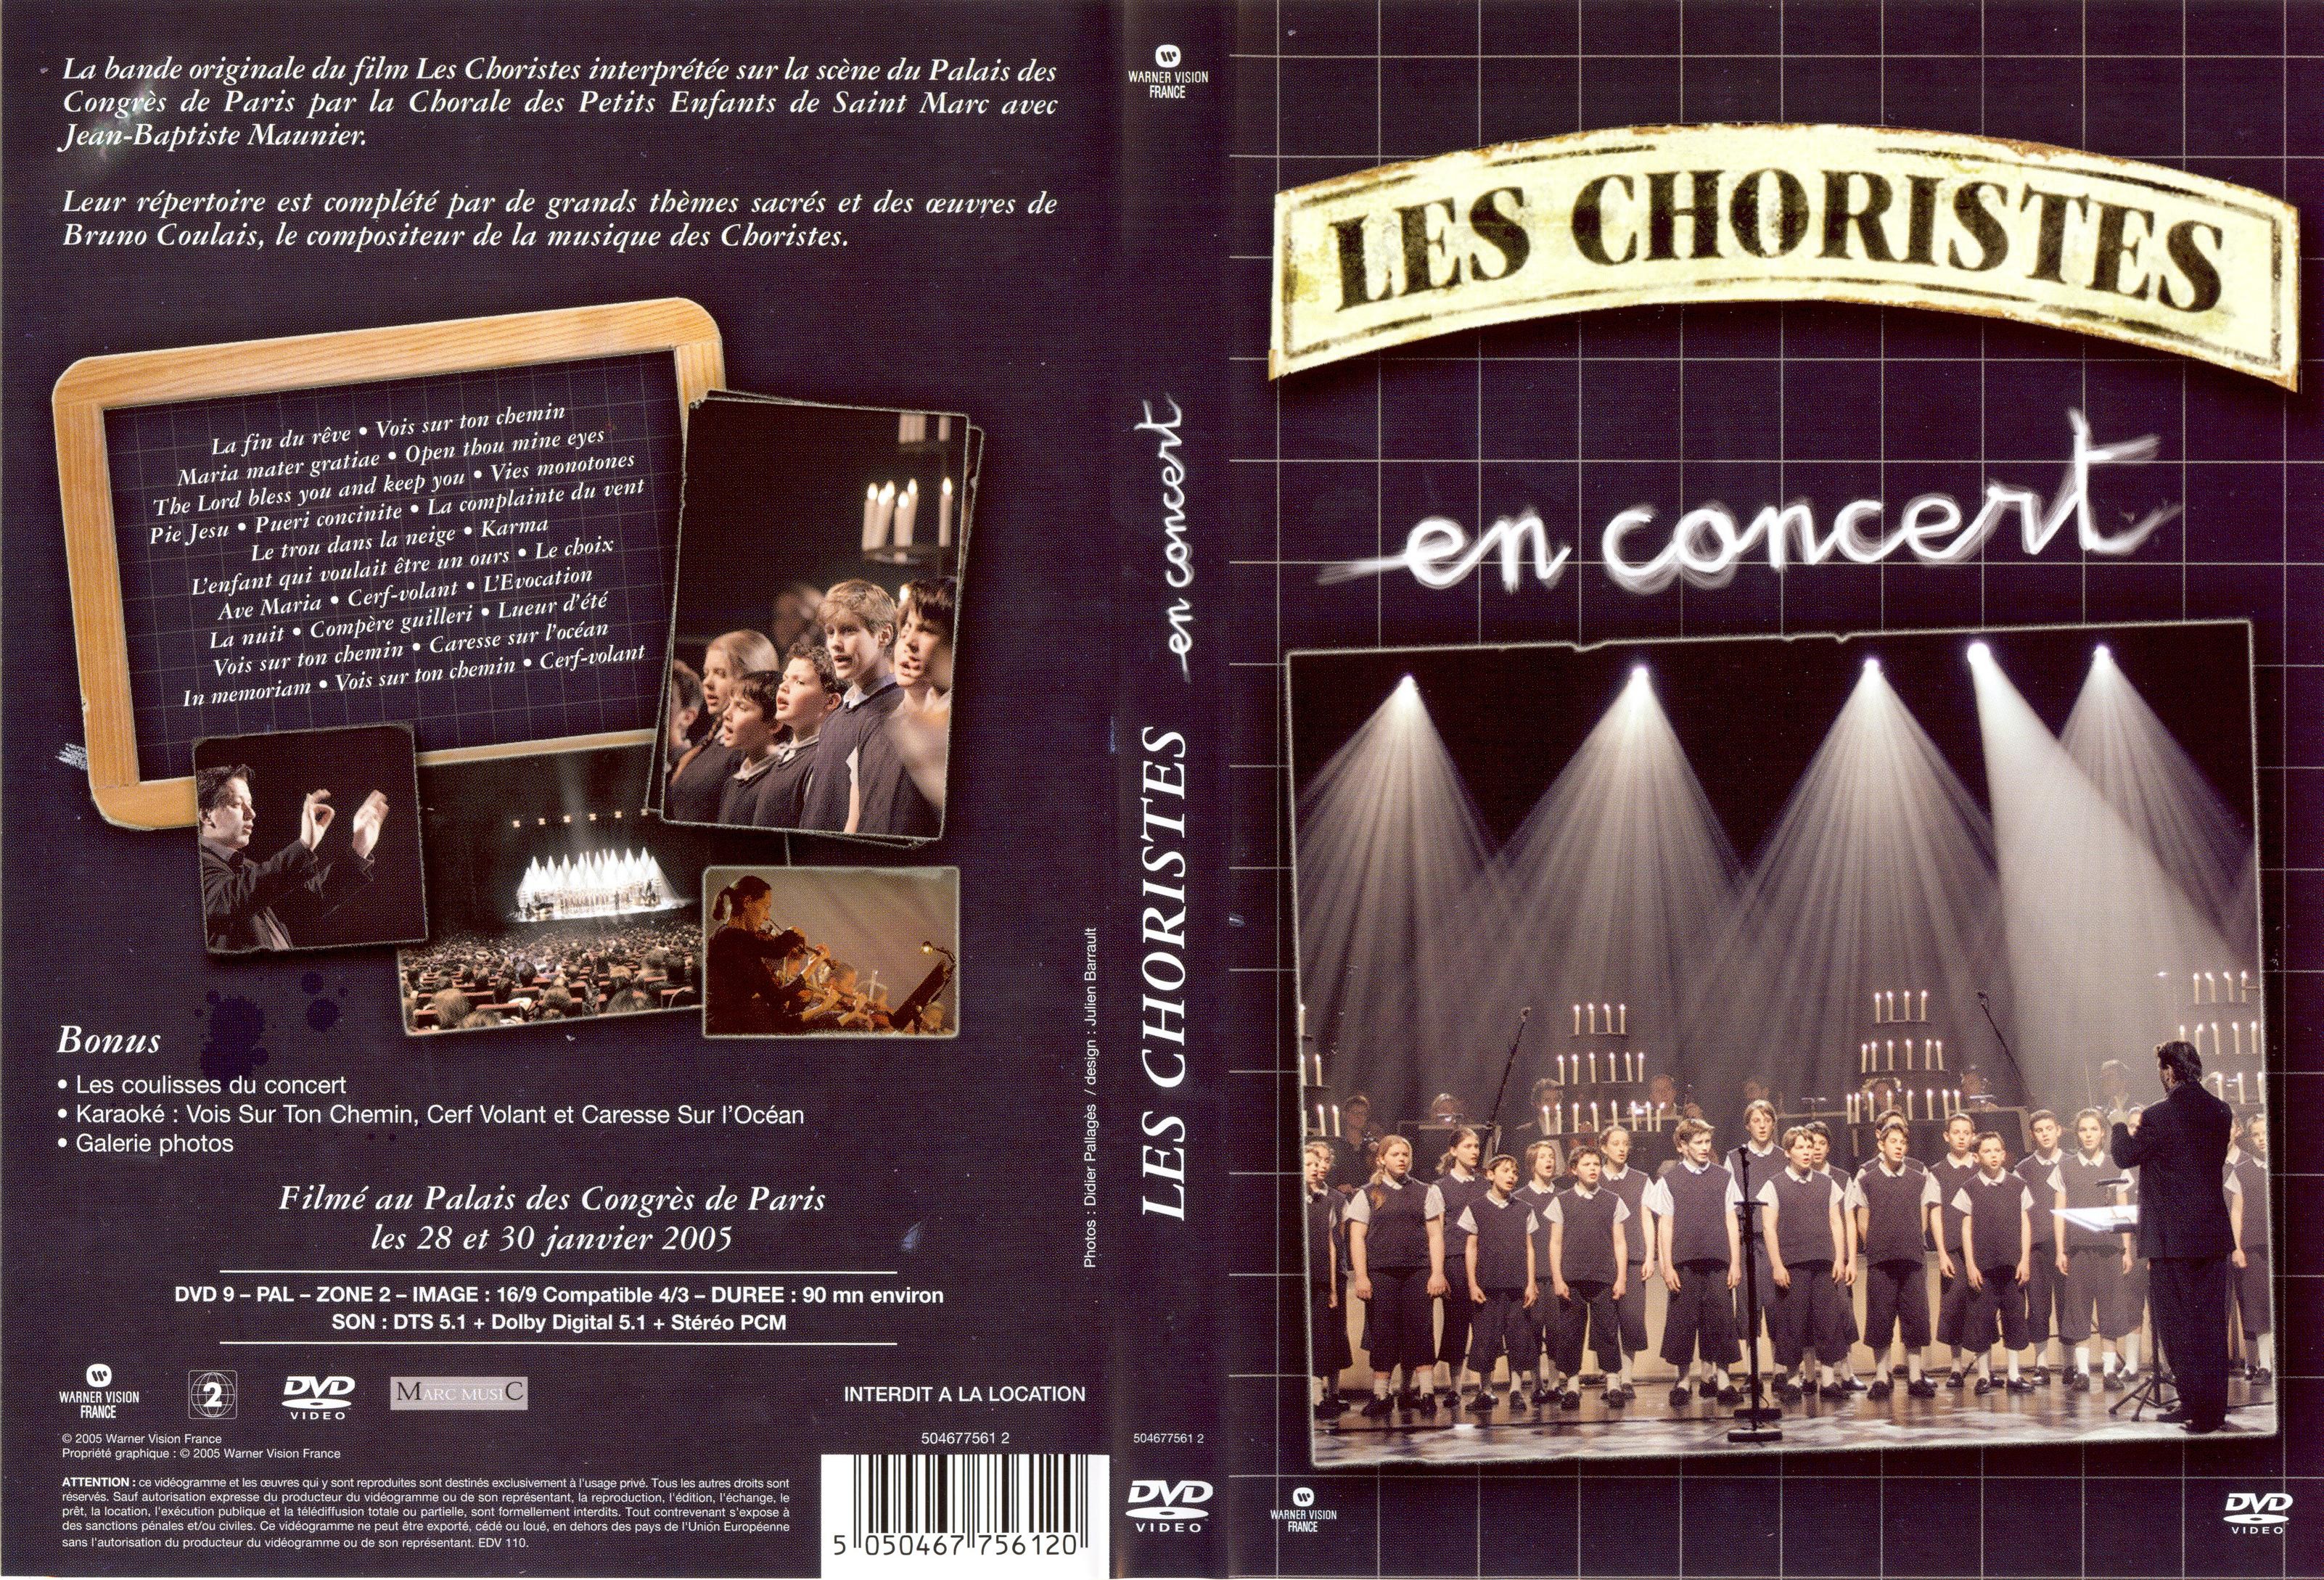 Jaquette DVD Les choristes en concert